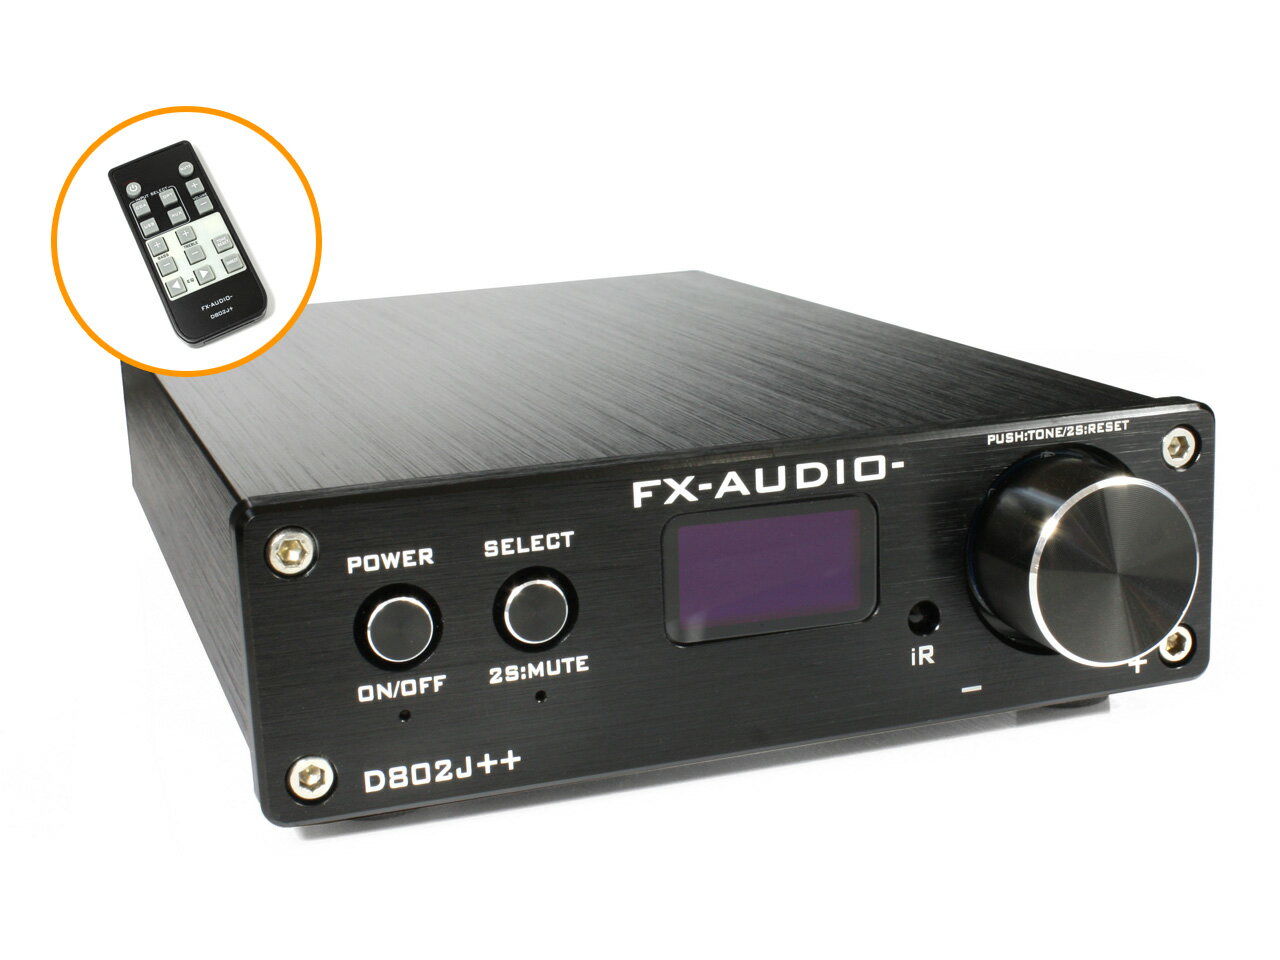 送料無料 FX-AUDIO- D802J++ [ブラック] デジタル3系統24bit/192kHz対応+アナログ1系統入力 STA326搭載 フルデジタル…